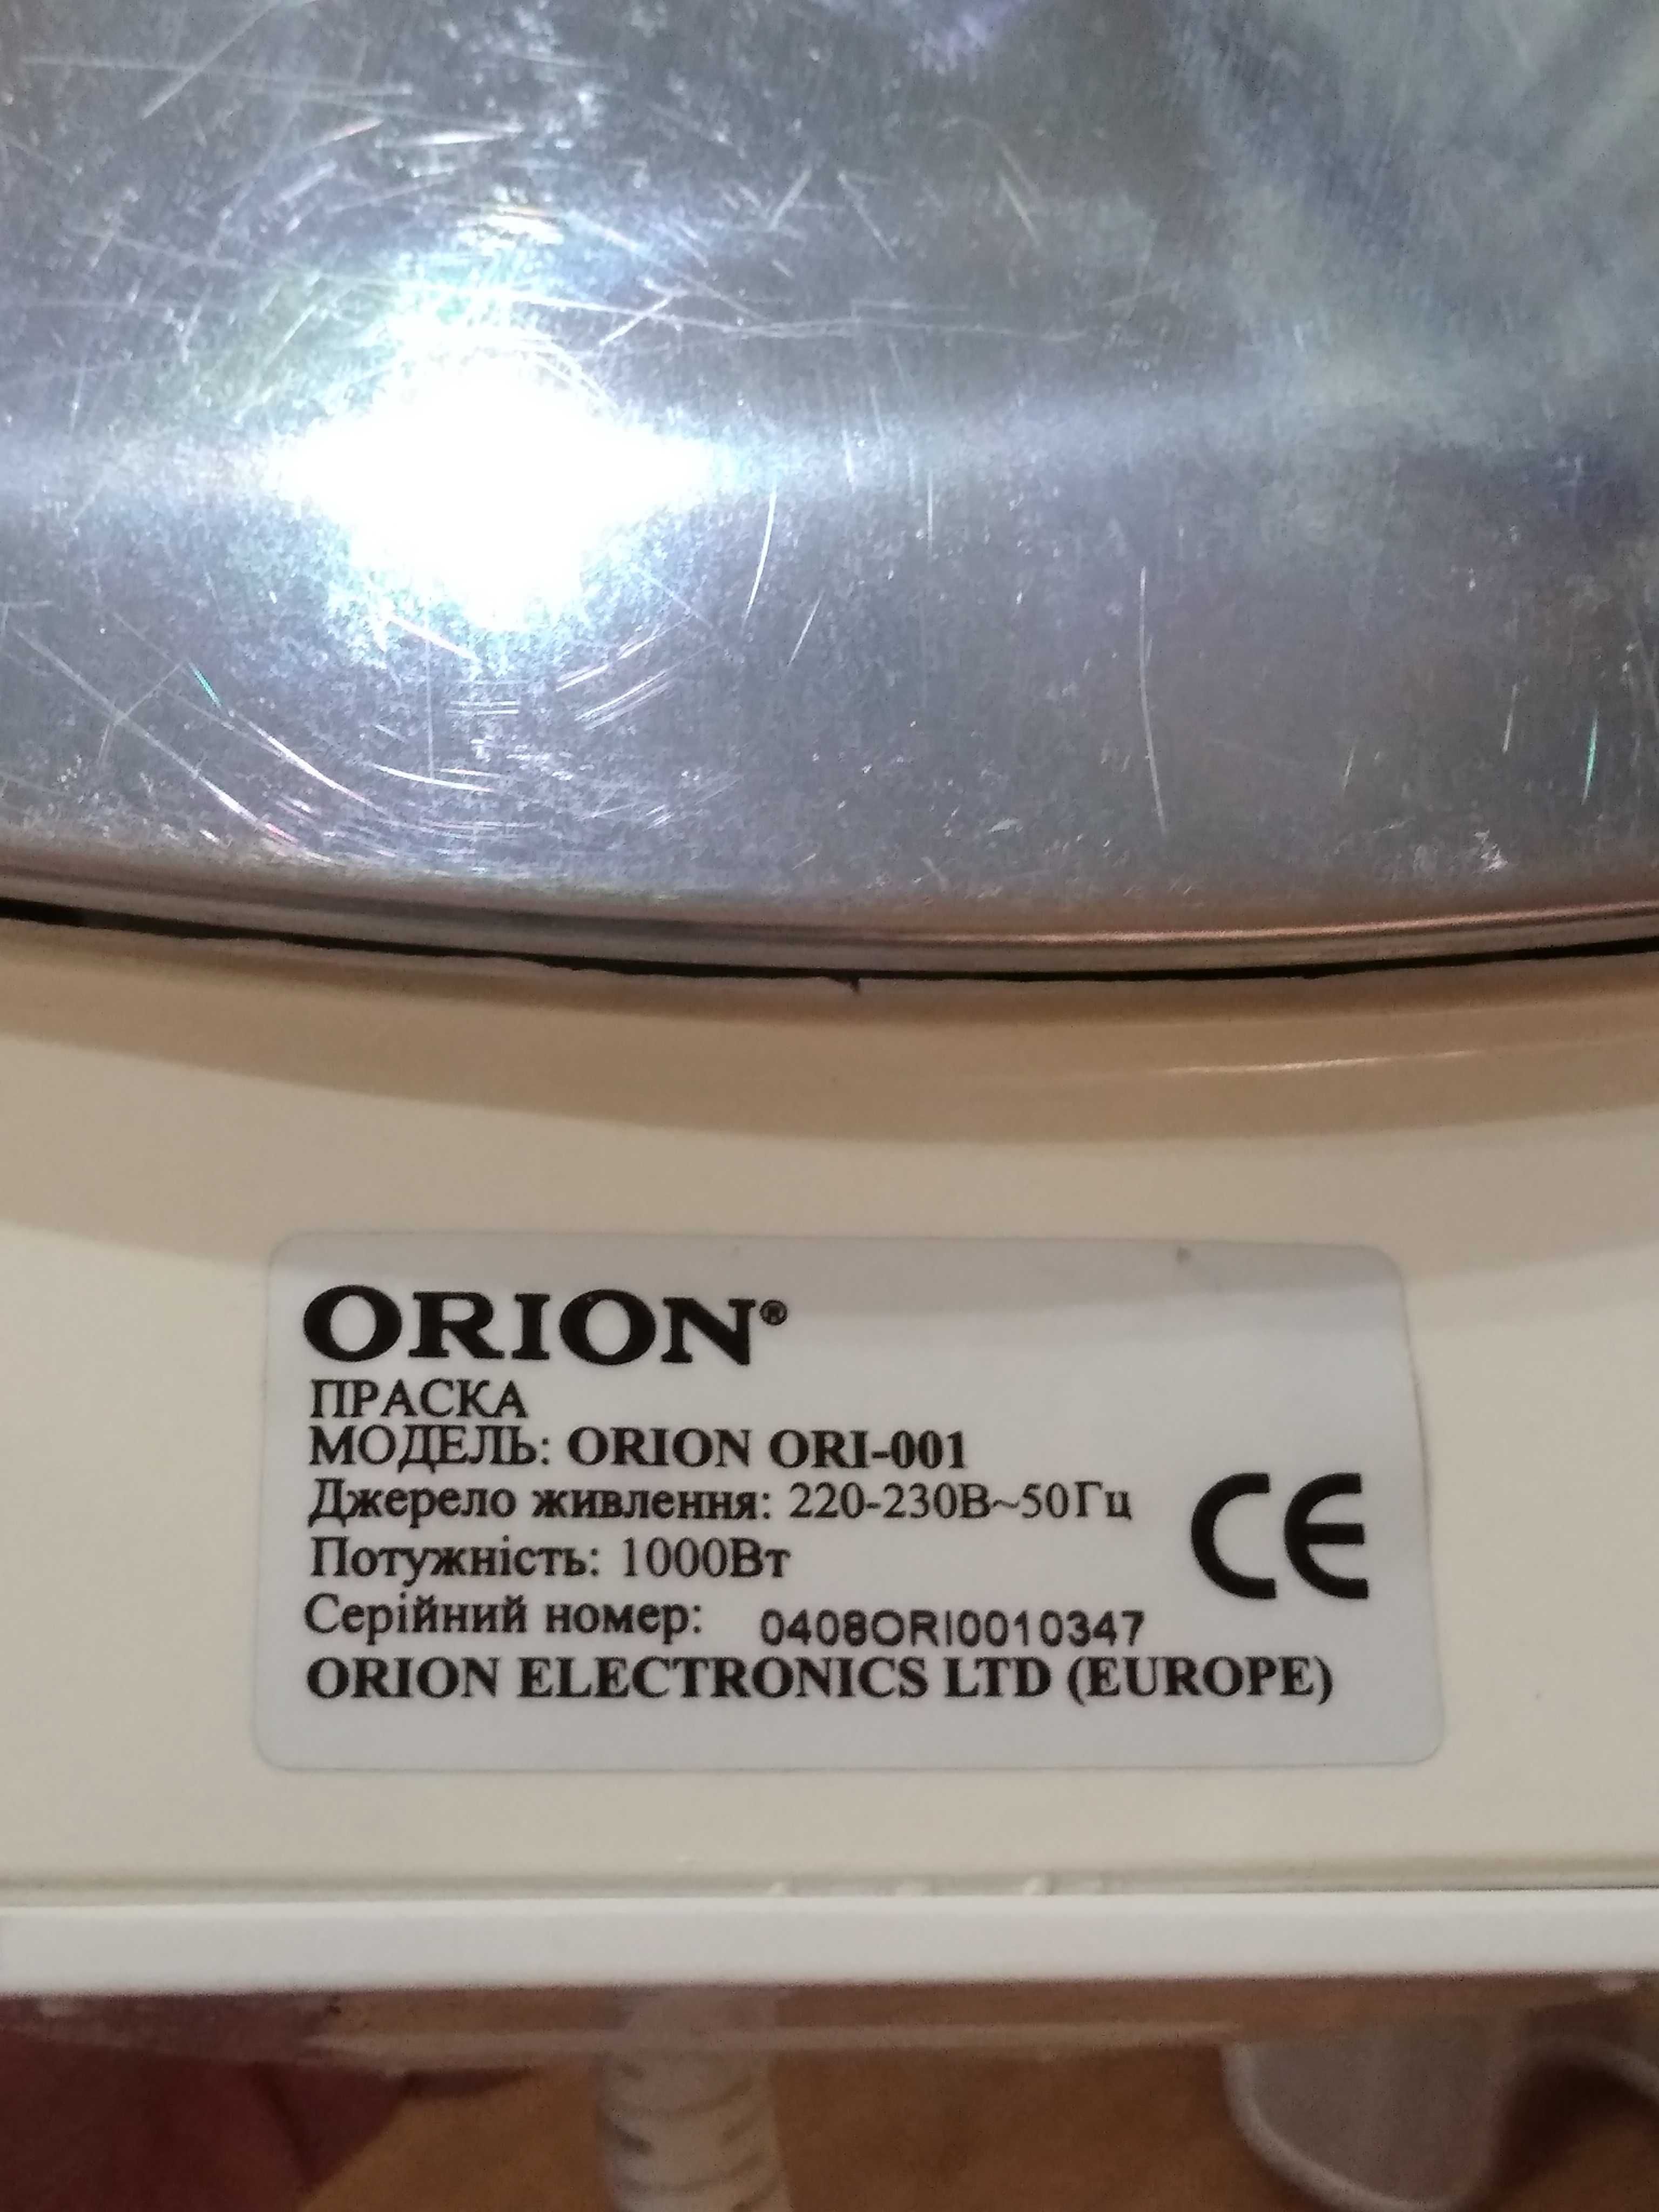 Утюг ORION ori-001